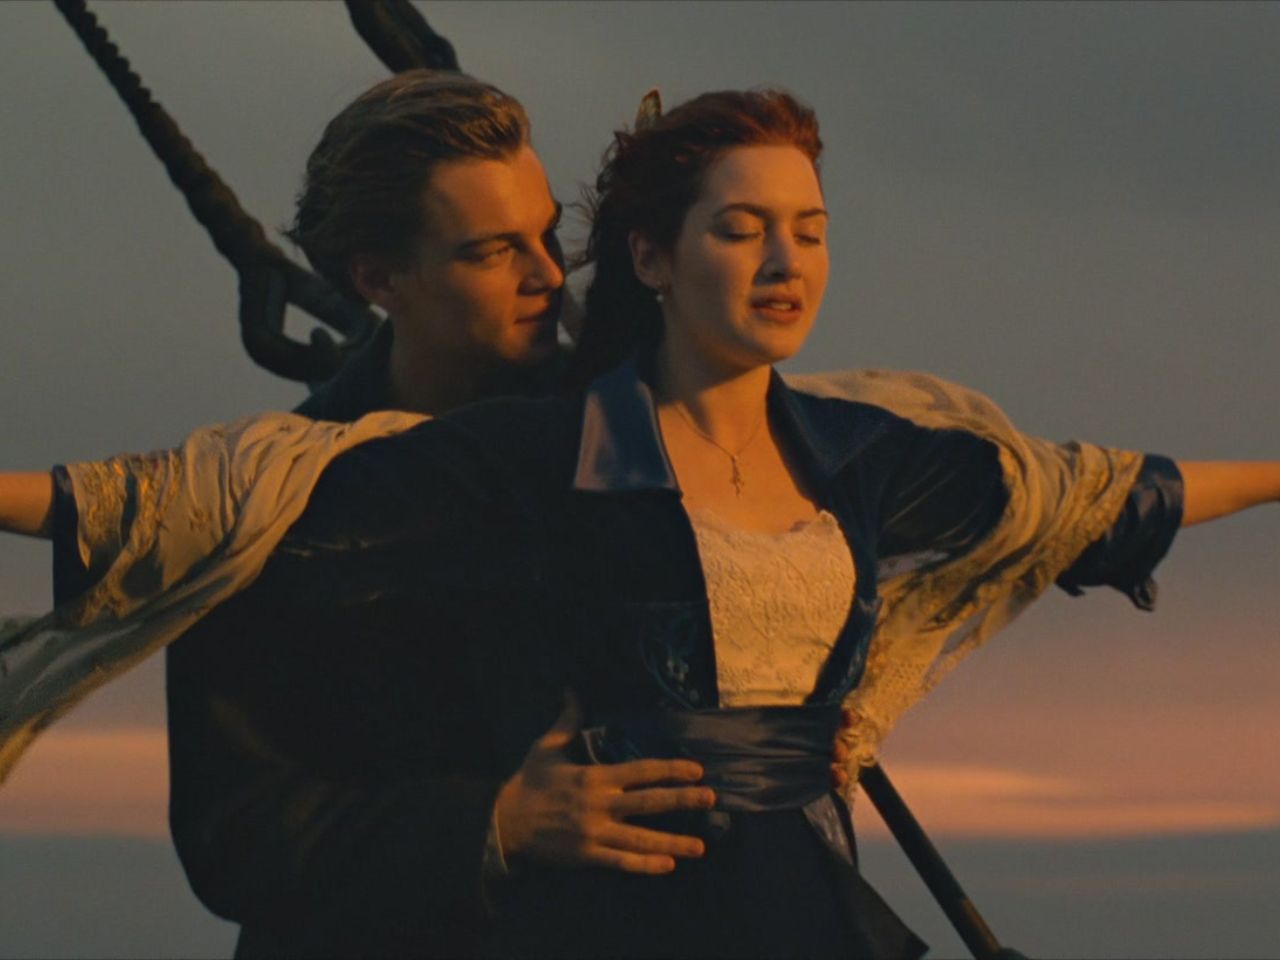 Il 19 dicembre 1997 usciva nelle sale Titanic, capolavoro di James Cameron